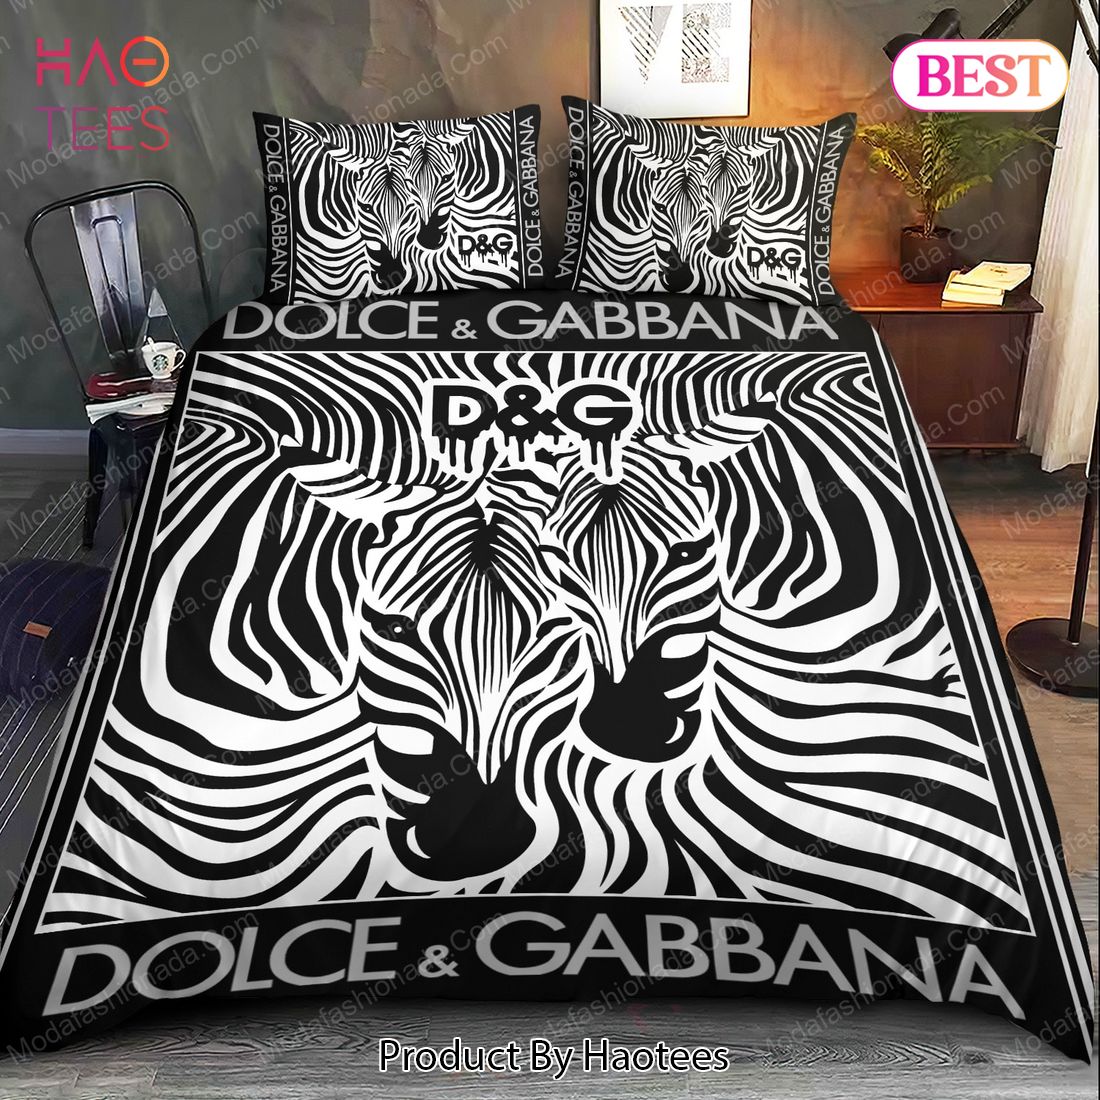 Buy Horse Dolce & Gabbana Bedding Sets Bed Sets, Bedroom Sets, Comforter  Sets, Duvet Cover, Bedspread